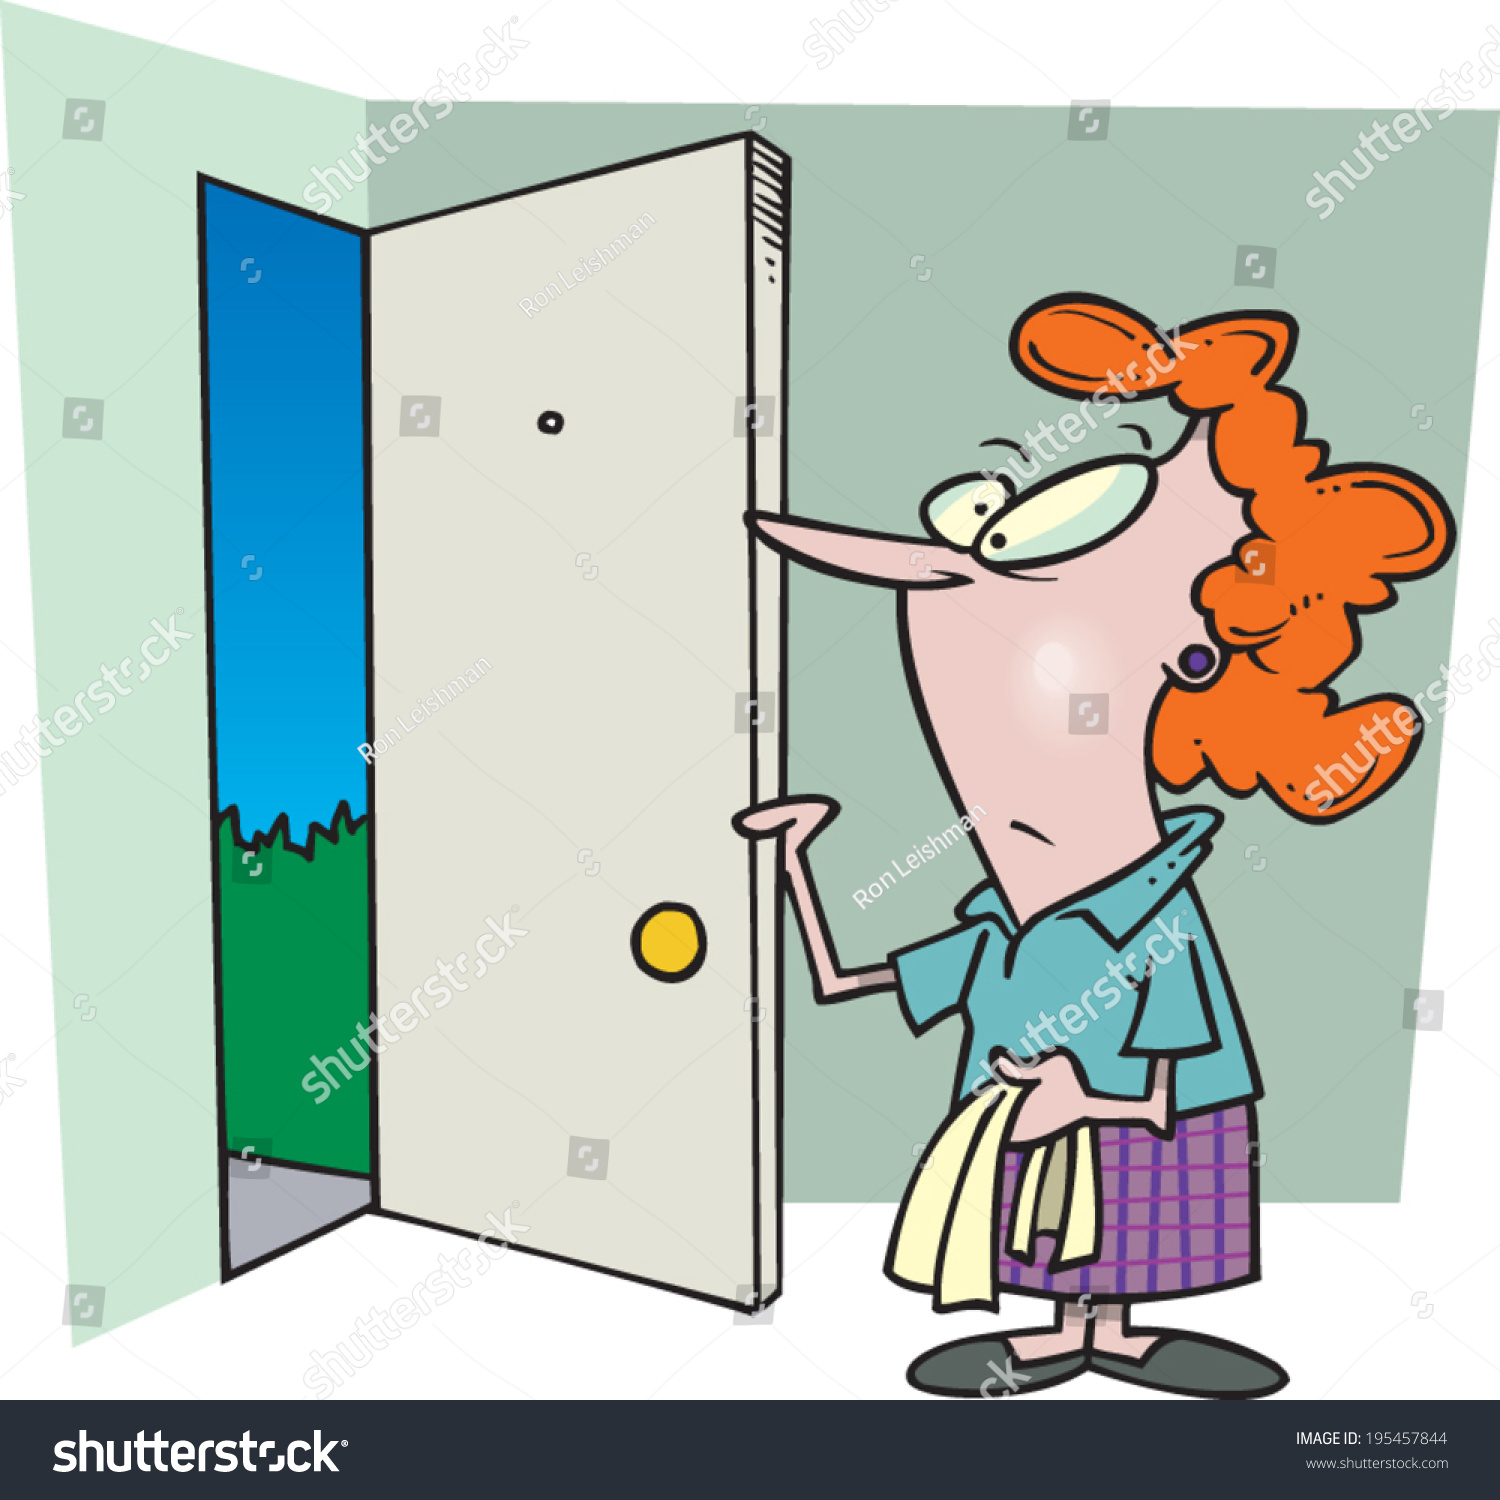 Cartoon Woman Opening Her Front Door Stock Vector 195457844 - Shutterstock